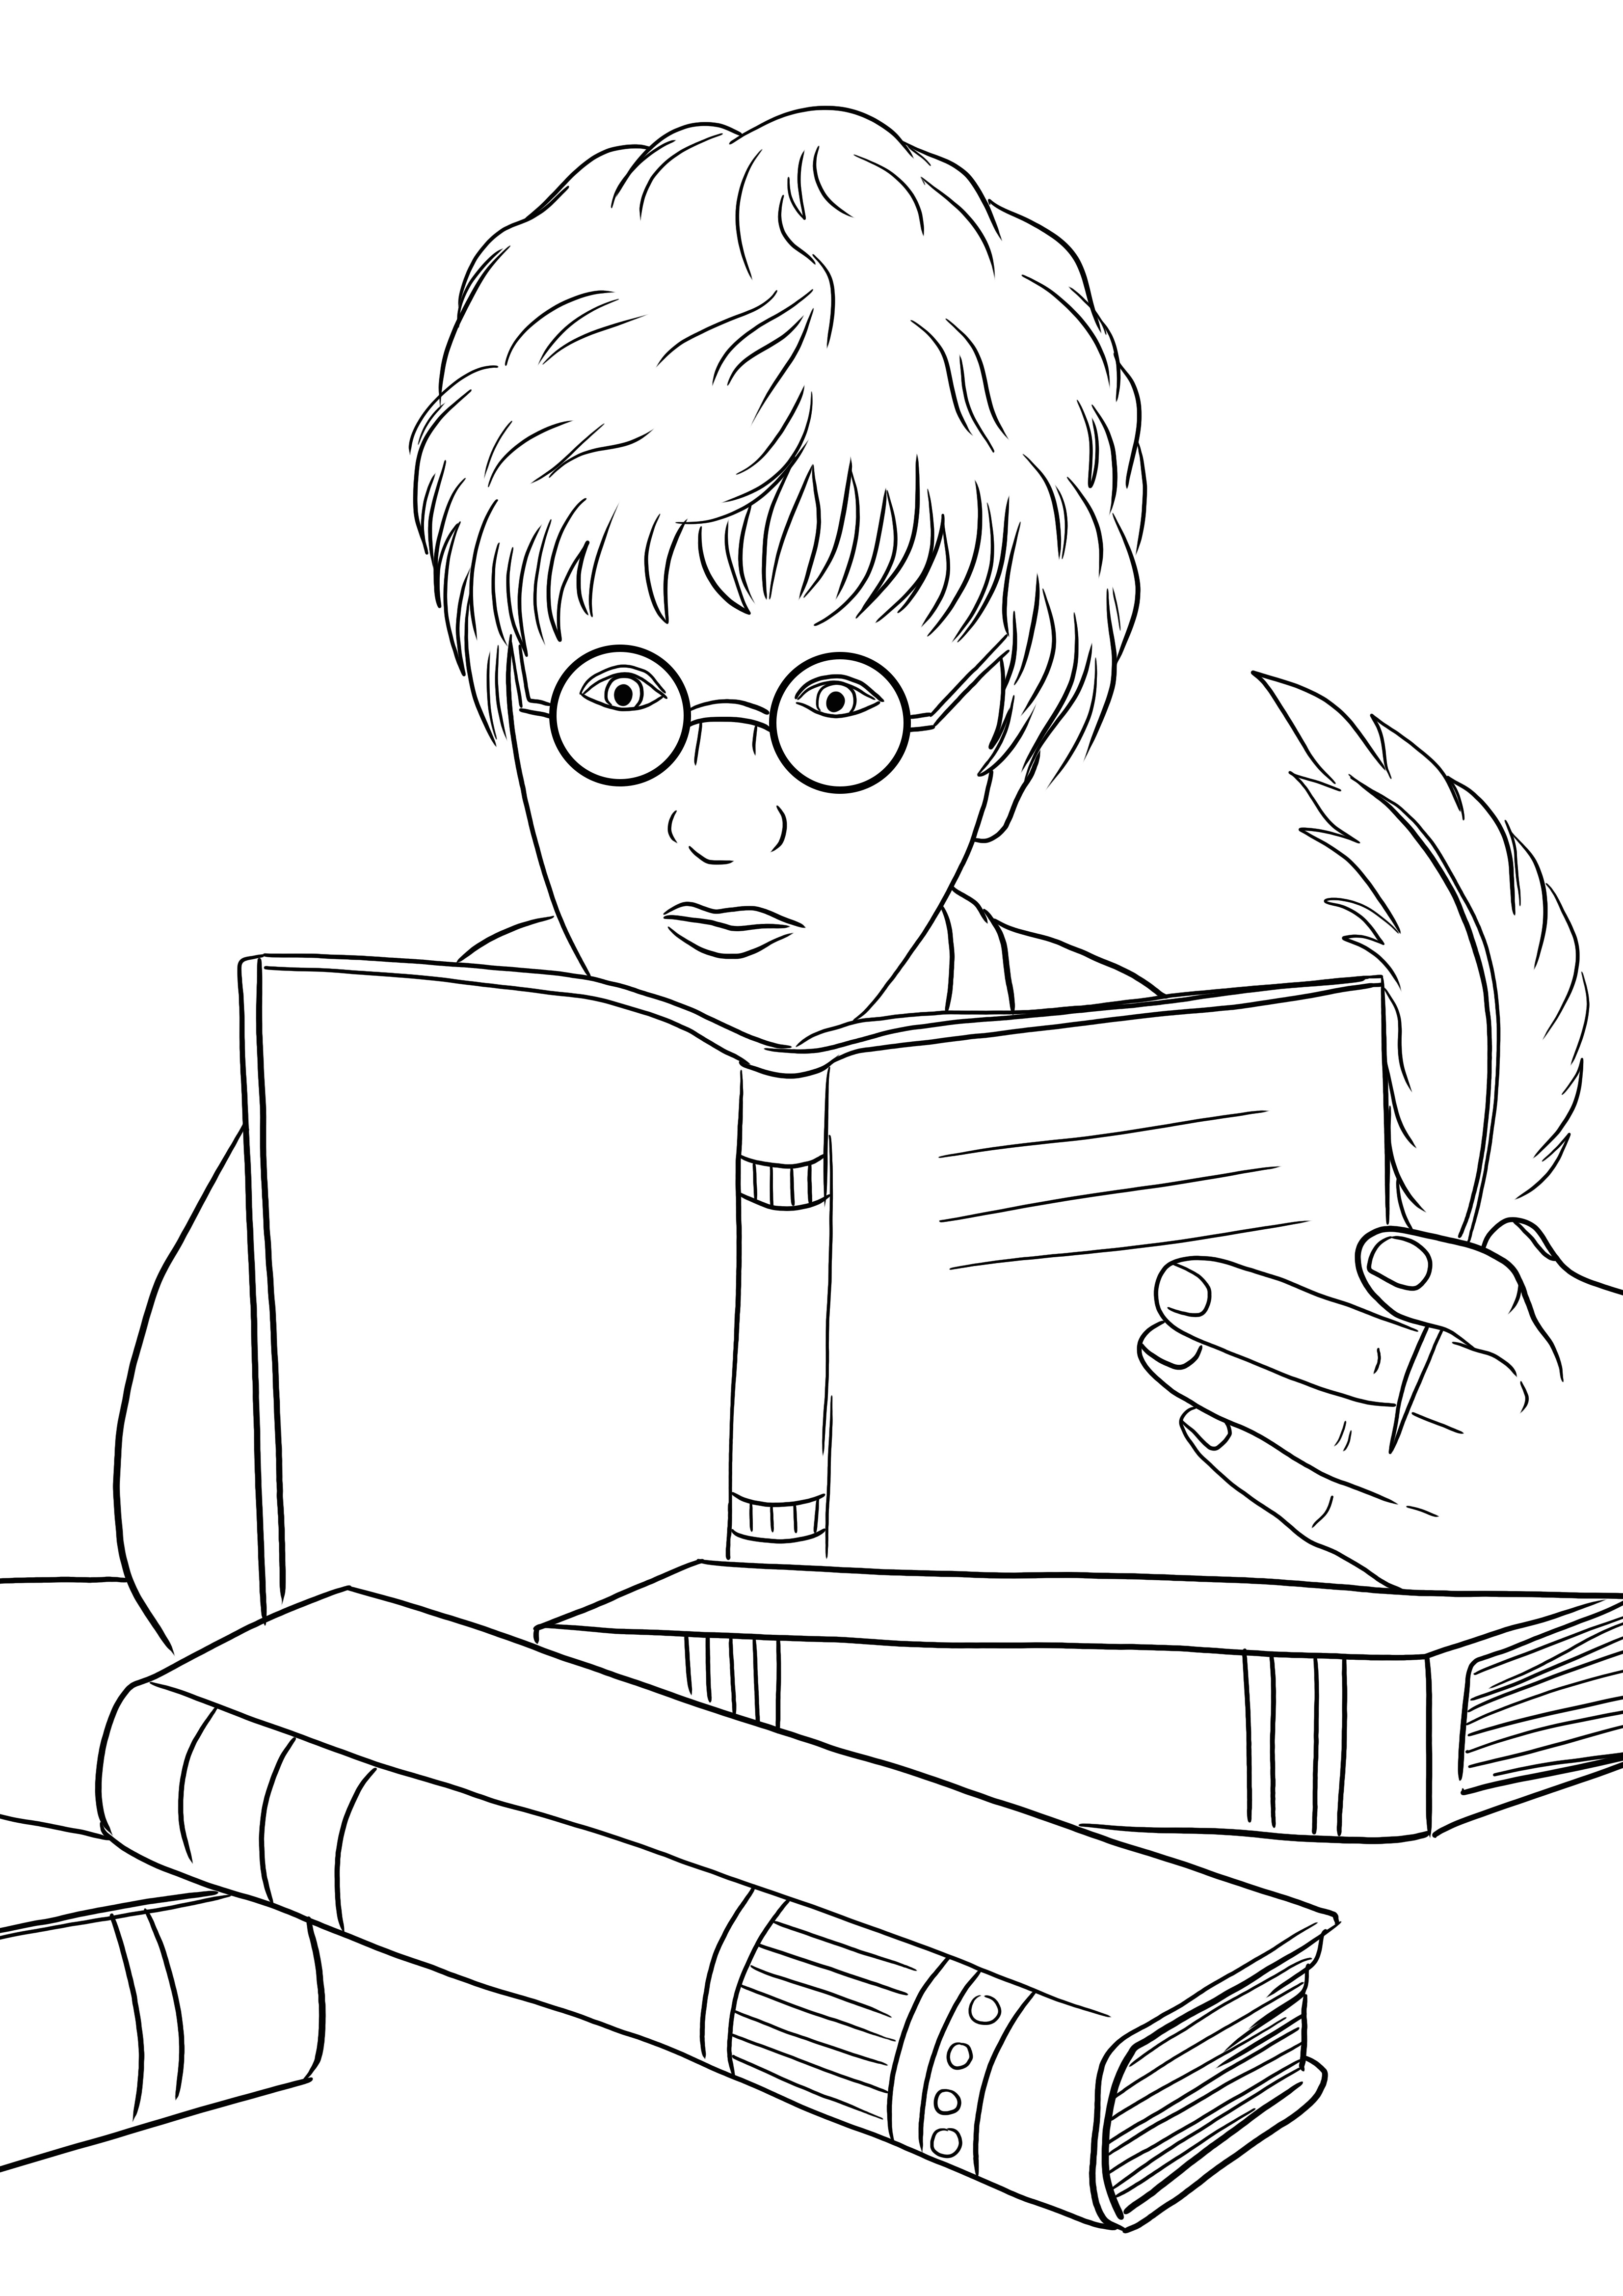 Harry Potter dan buku mantra gratis untuk diunduh atau dicetak dan mudah diwarnai